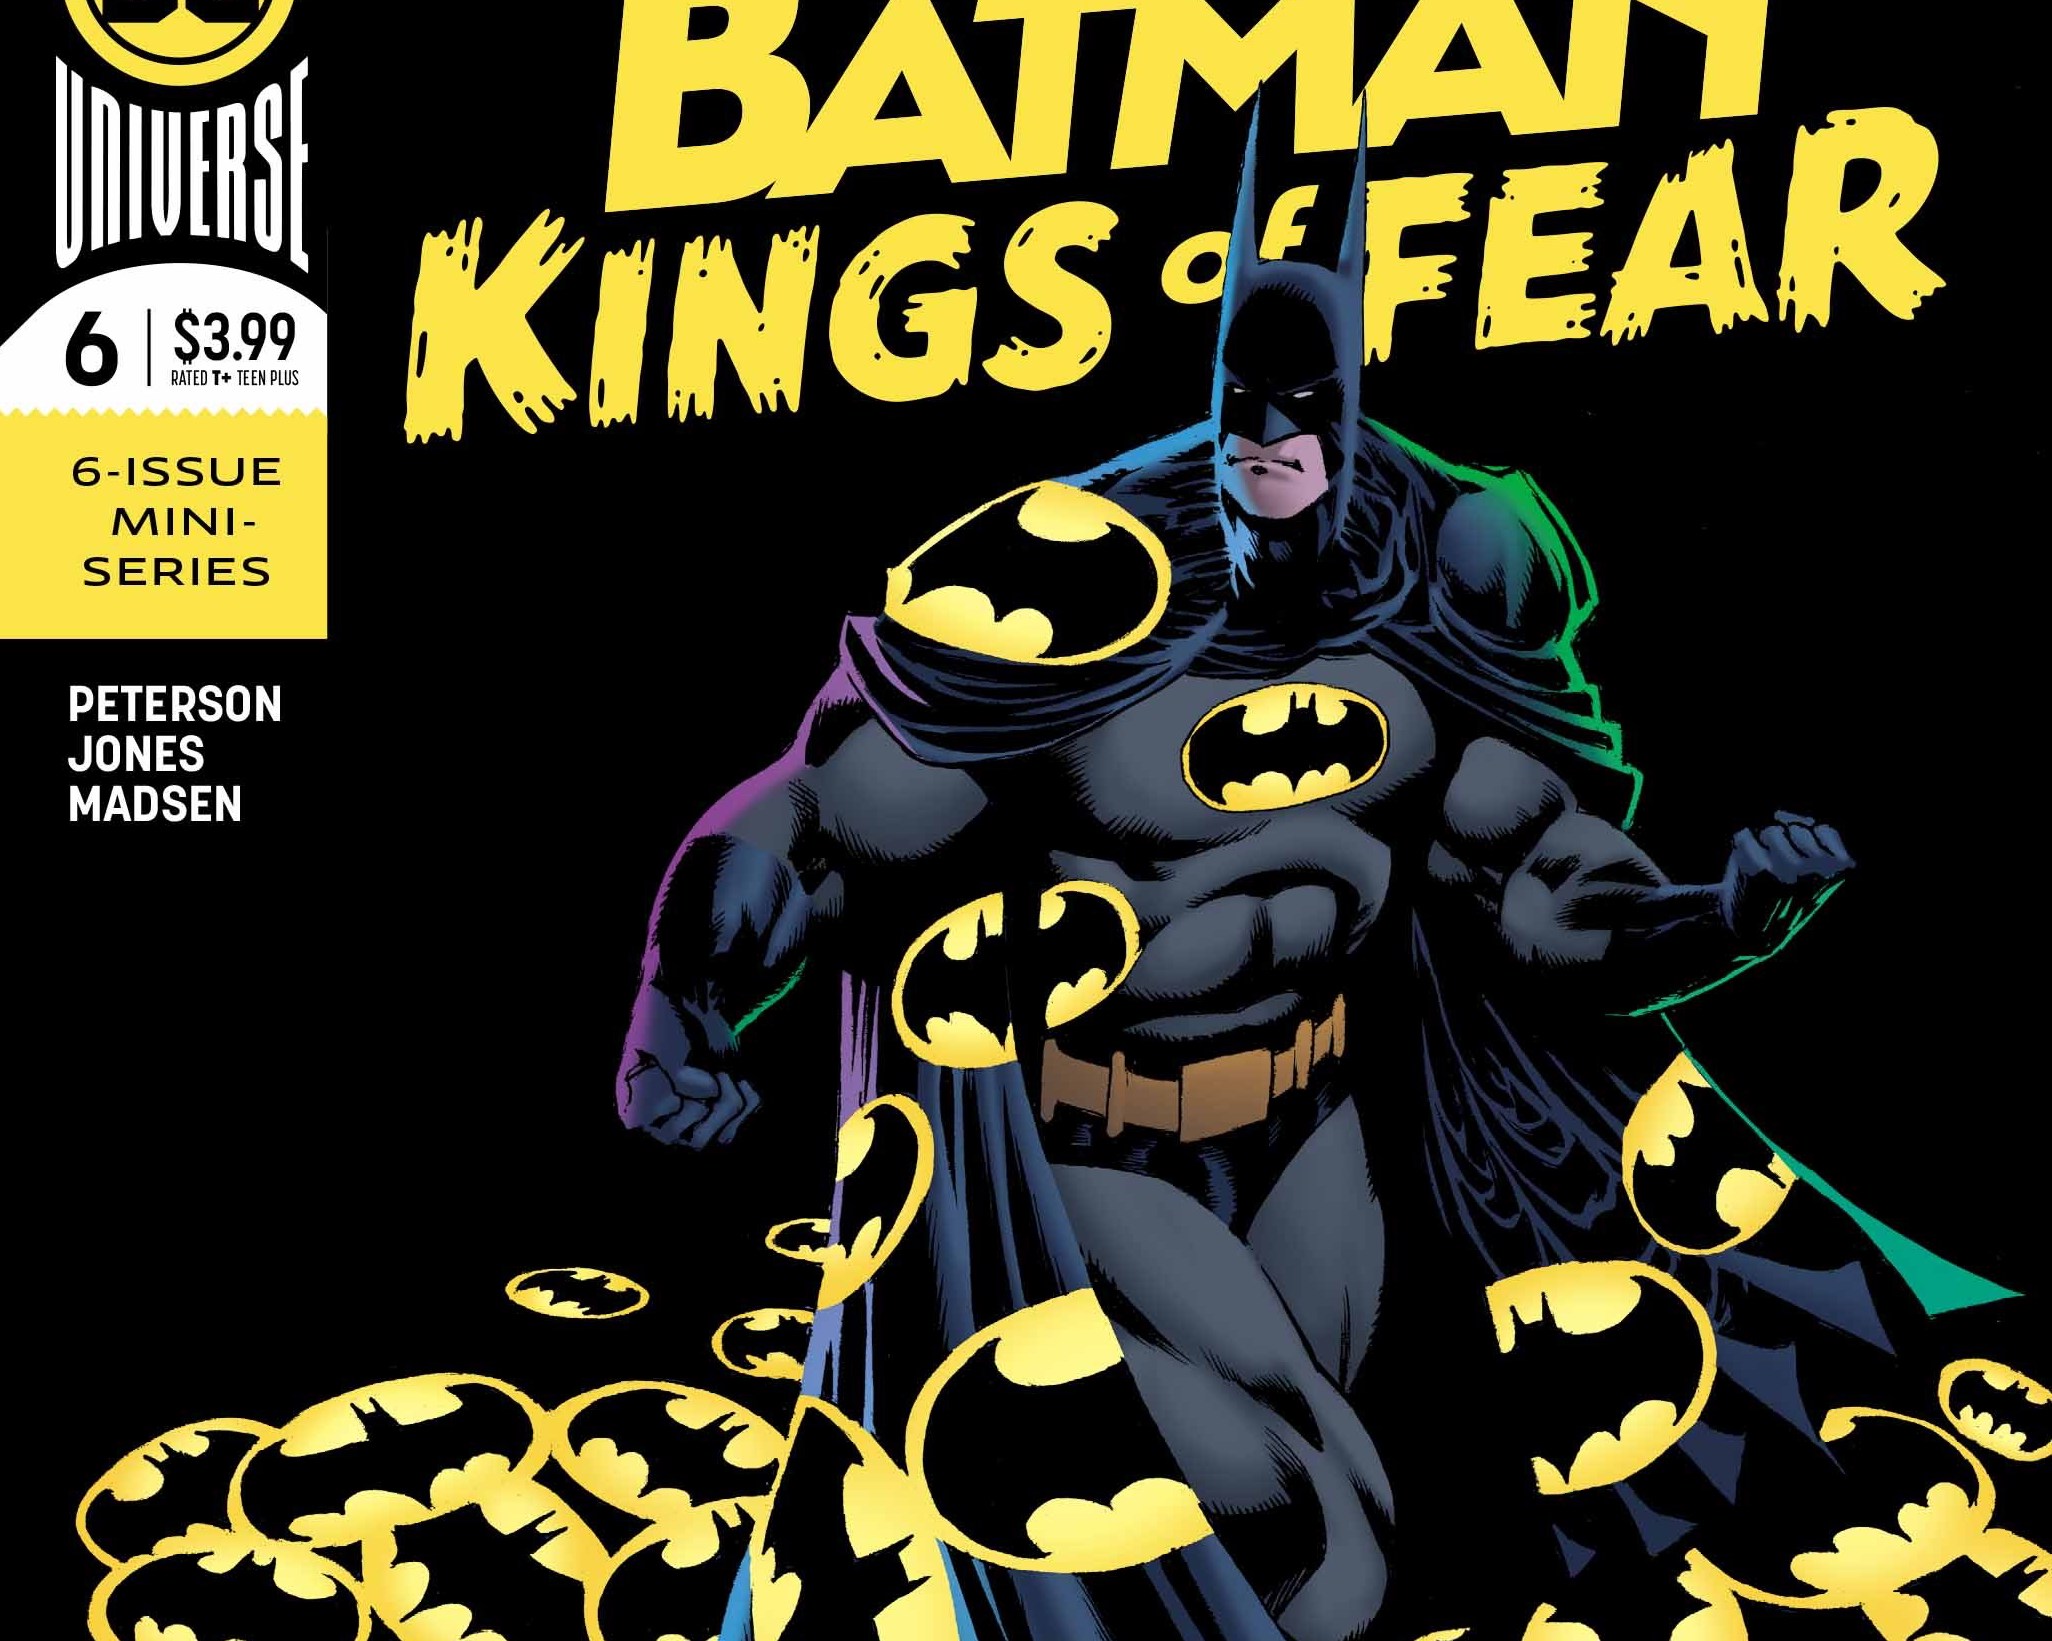 Batman: Kings of Fear #6 Review